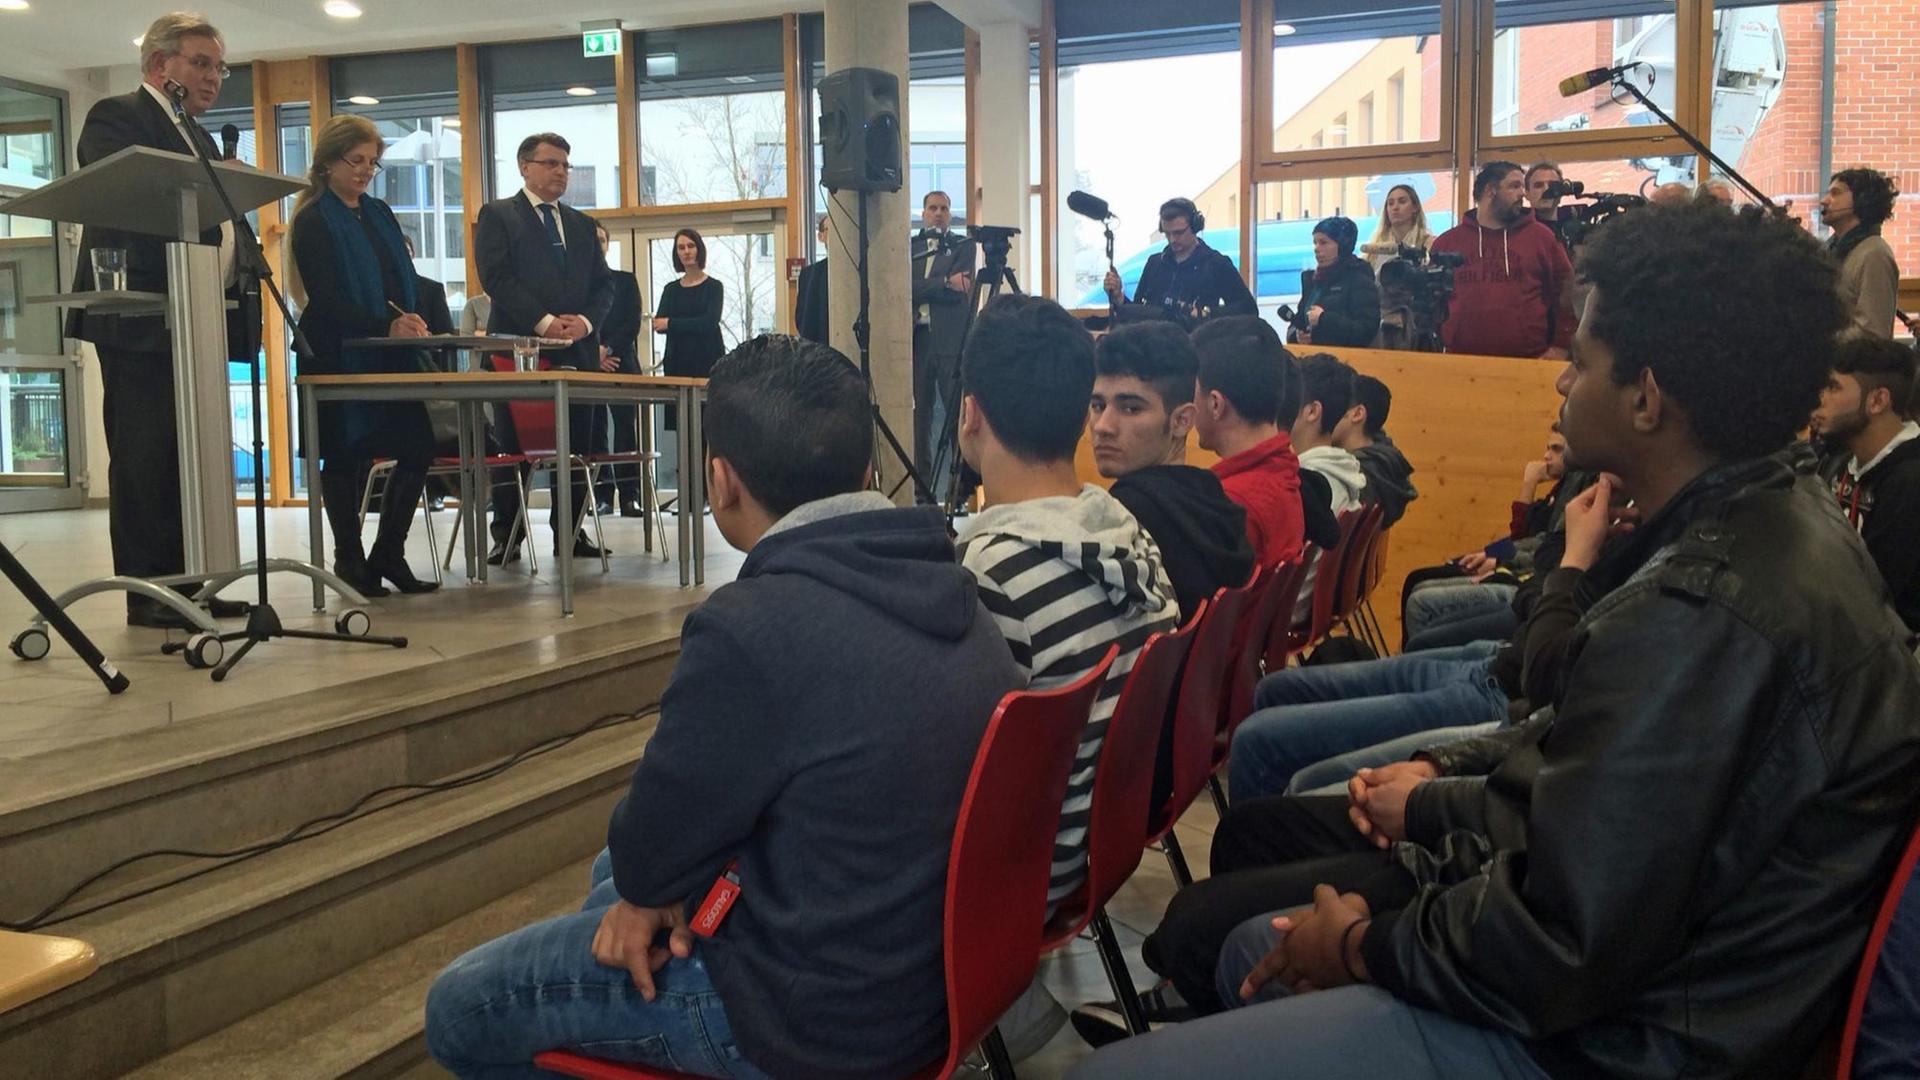 Flüchtlinge und Asylbewerber sitzen während eines Vortrag auf roten Stühlen.